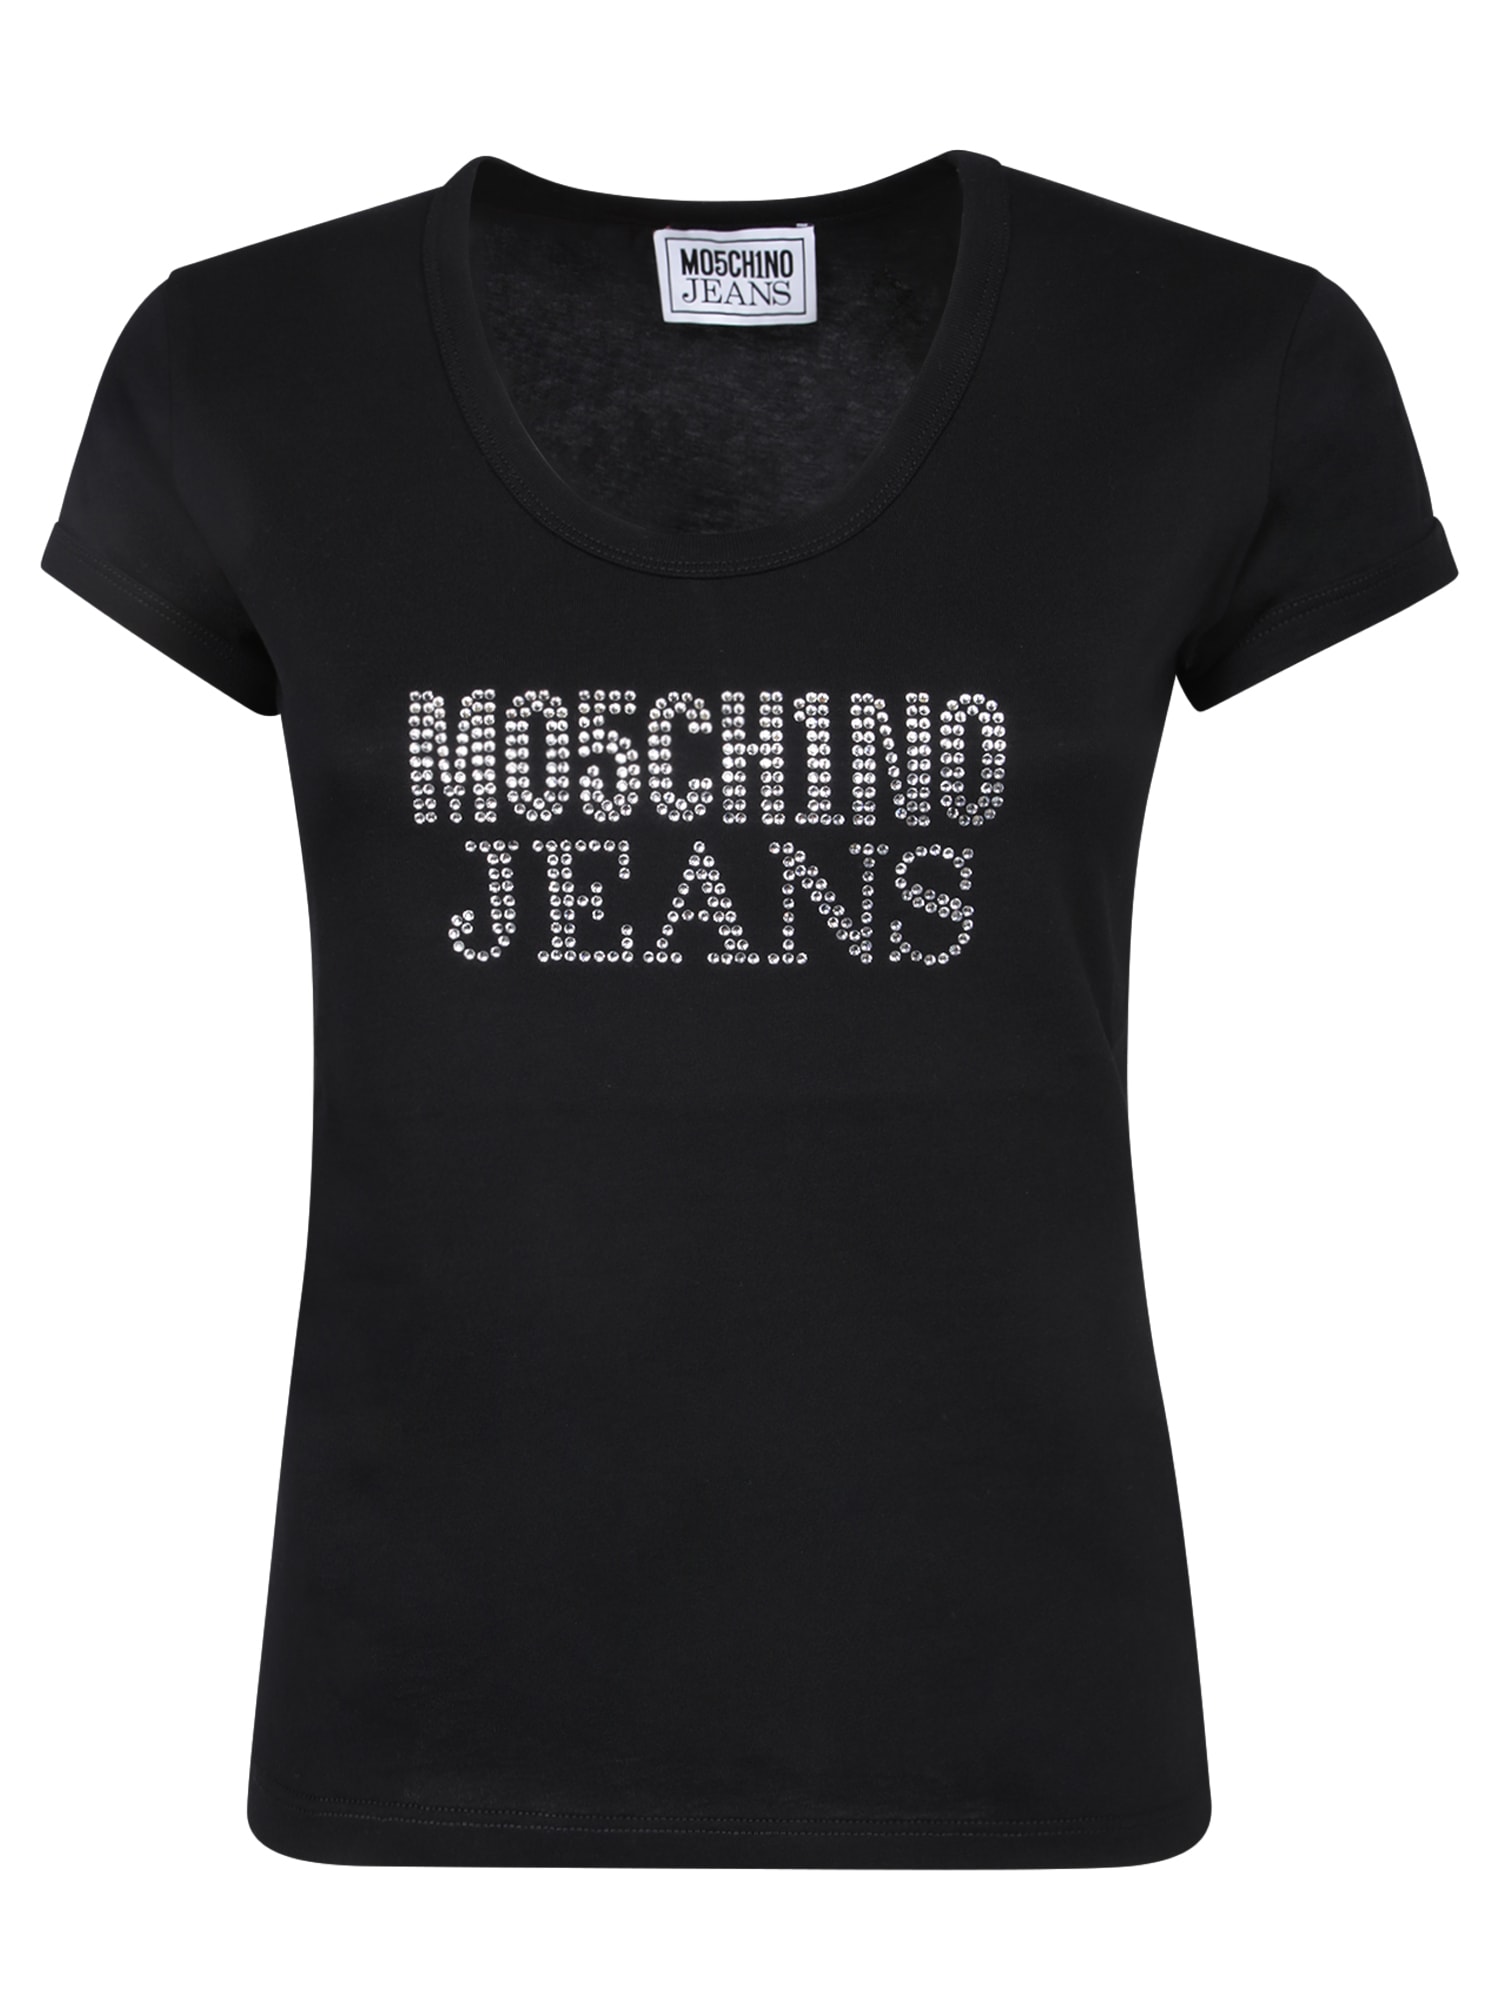 Moschino Black Rhinestone Logo T-shirt